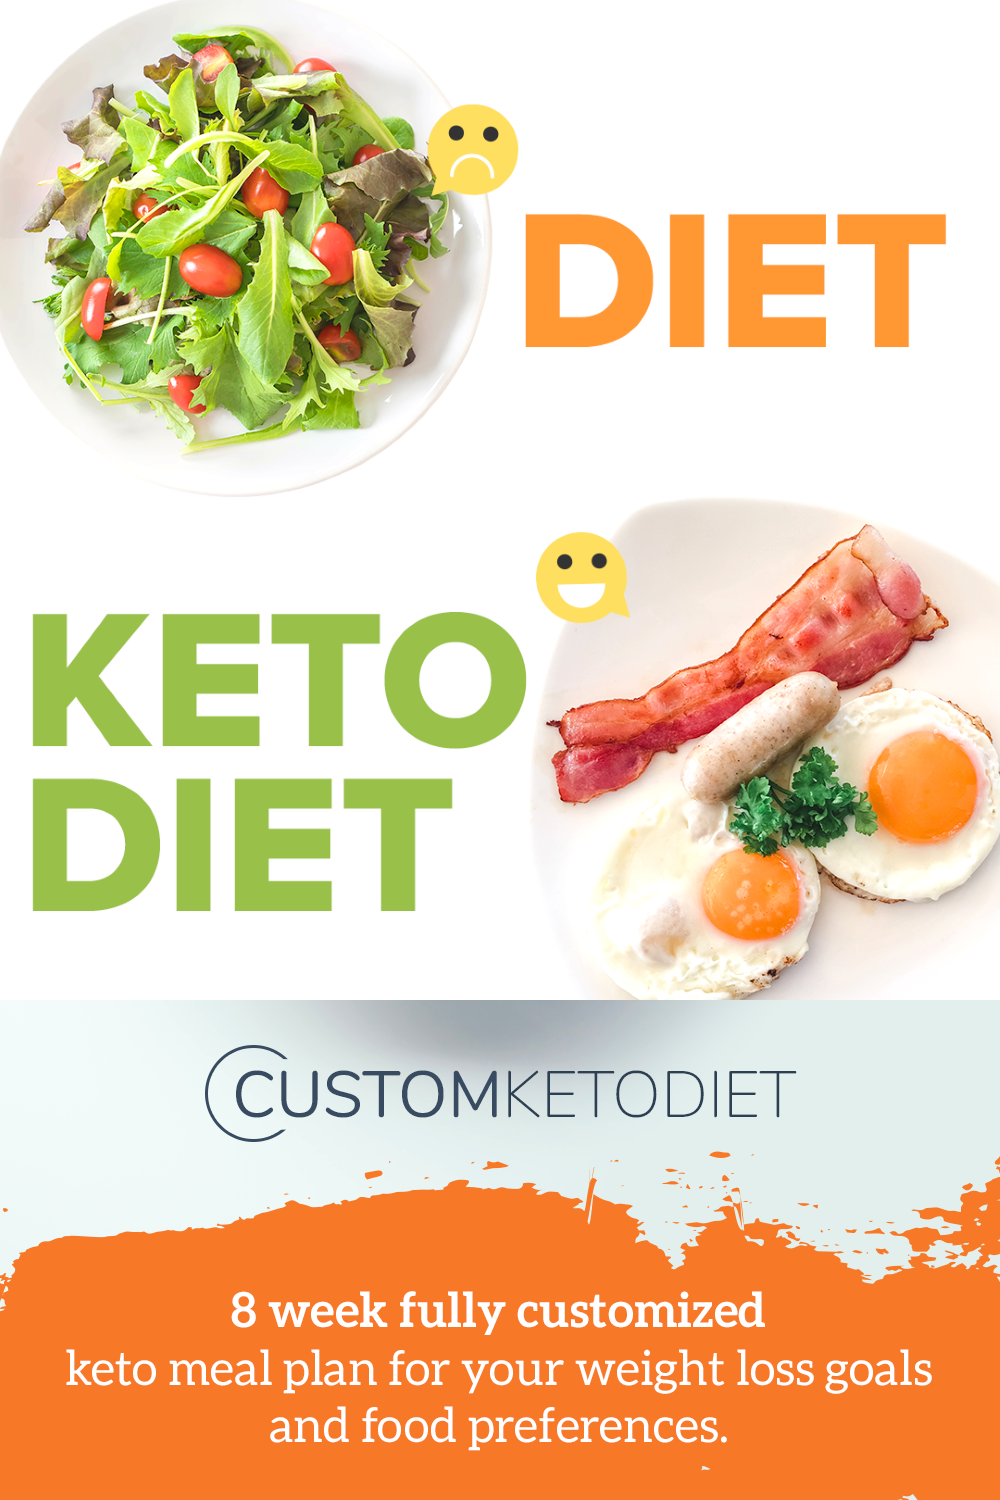 Custom Keto Diet - preis - forum - bestellen - bei Amazon